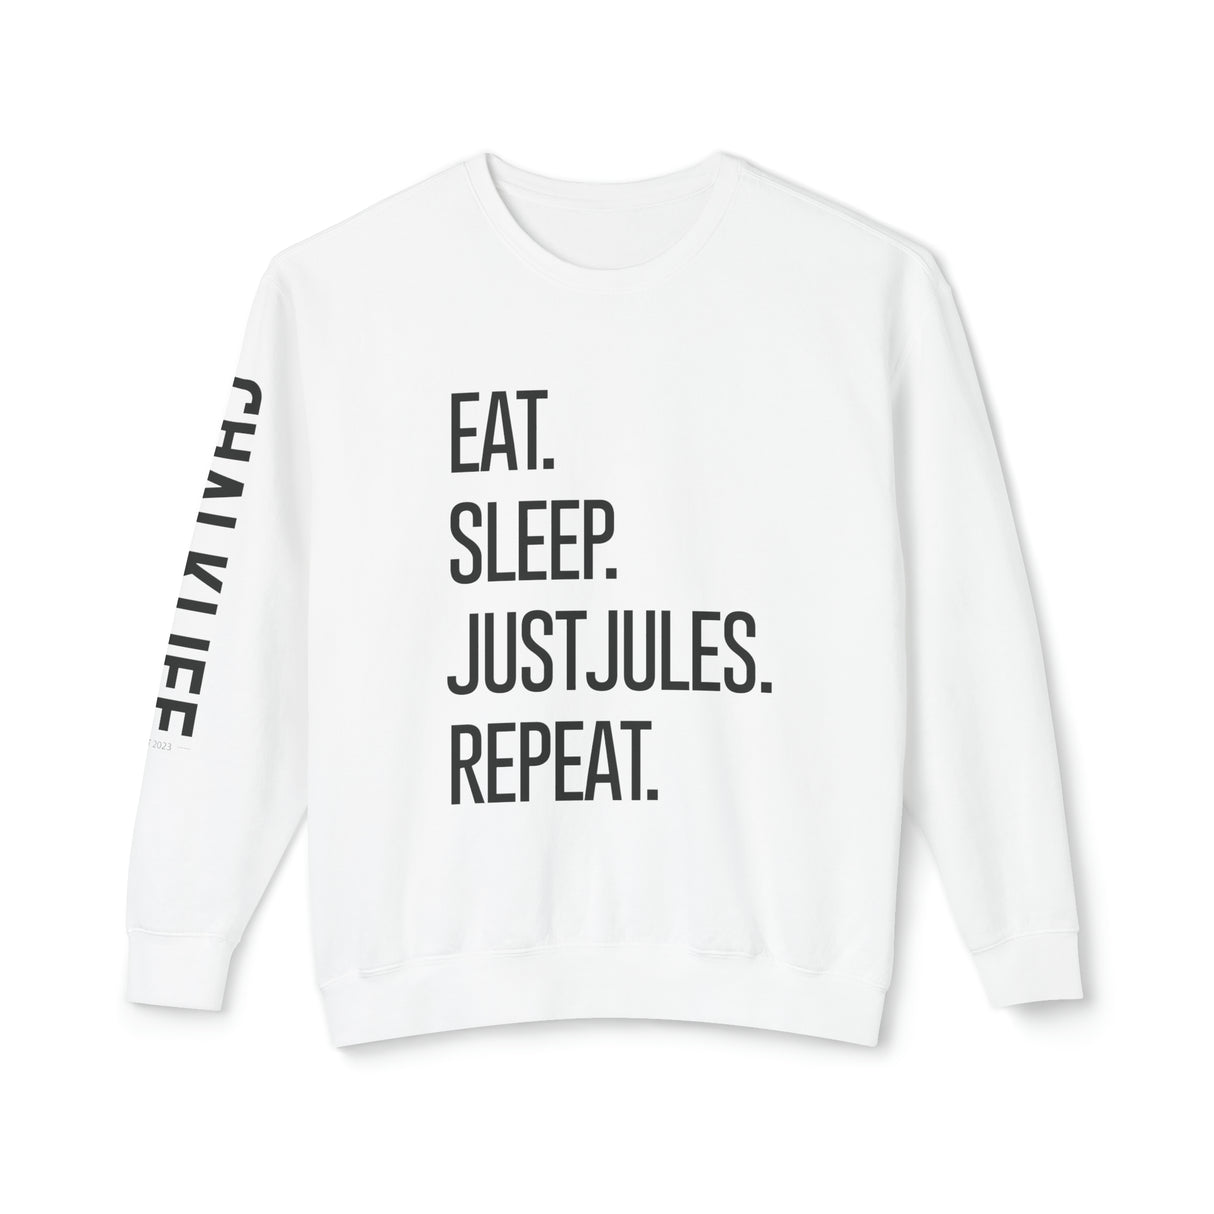 JustJules - Eat.Sleep.JustJules. Repeat. - Lightweight Crewneck Sweatshirt